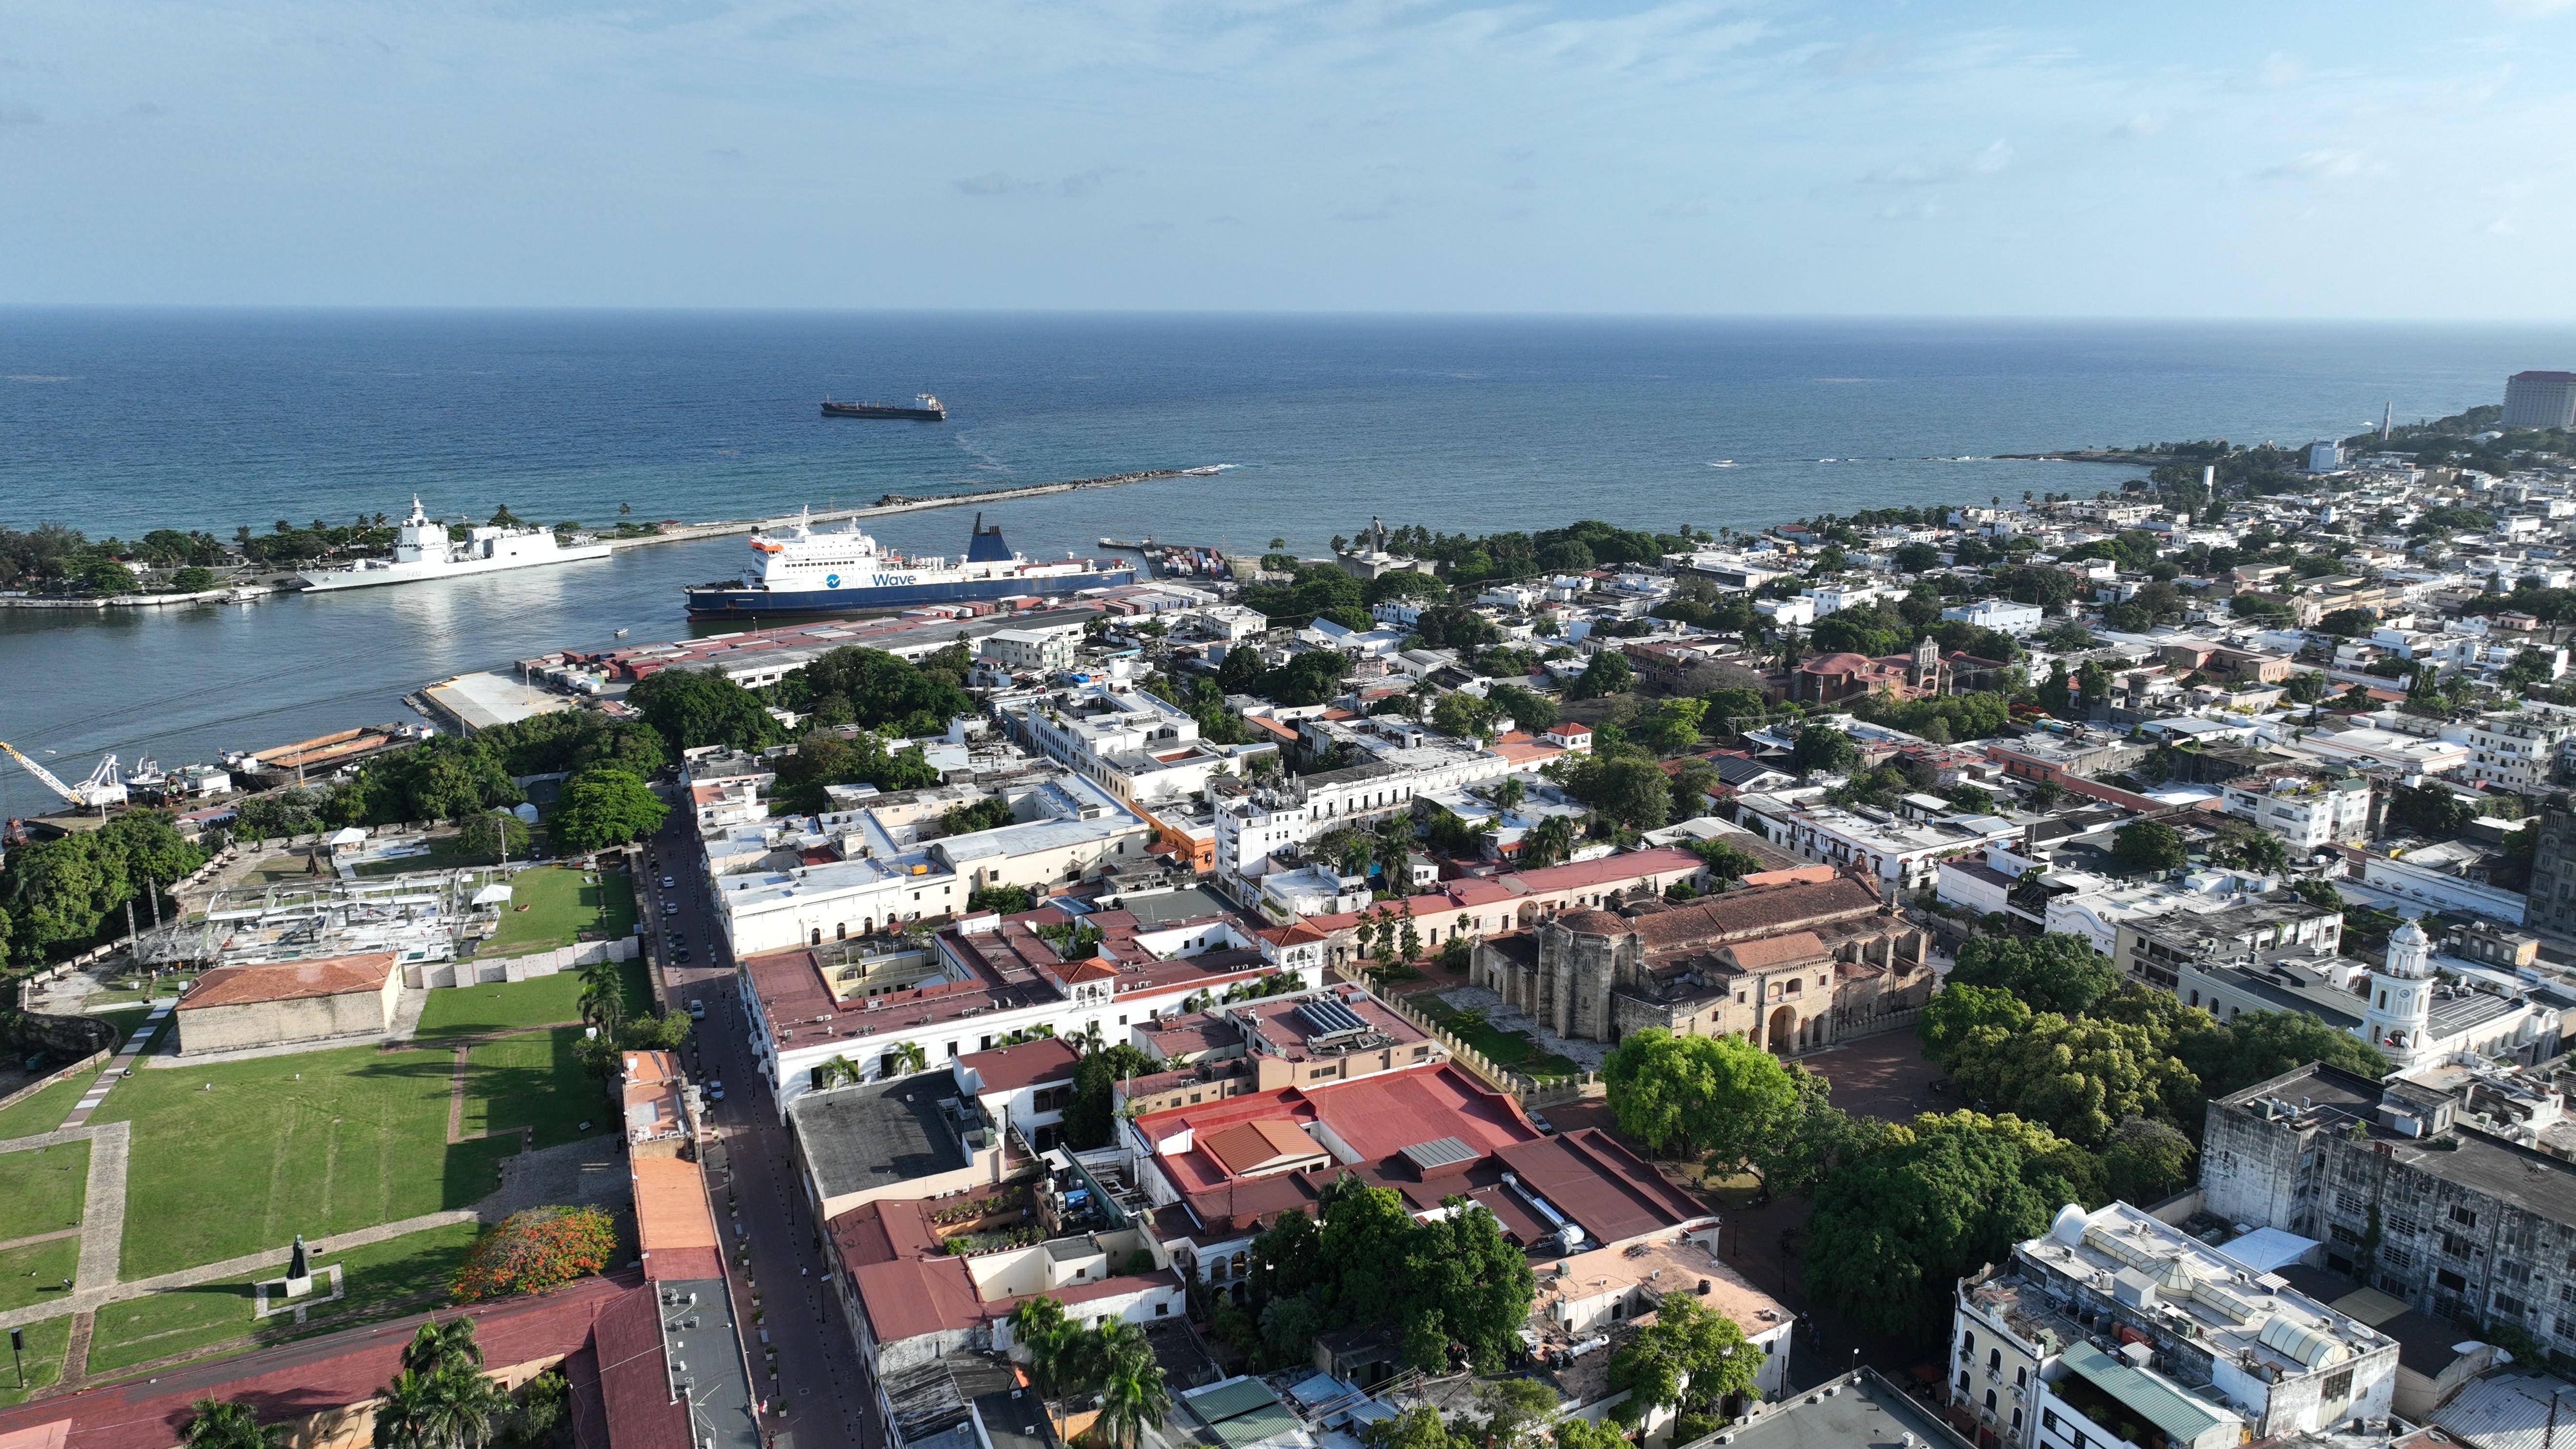 这是5月21日在多米尼加首都圣多明各拍摄的城区一景(无人机照片)